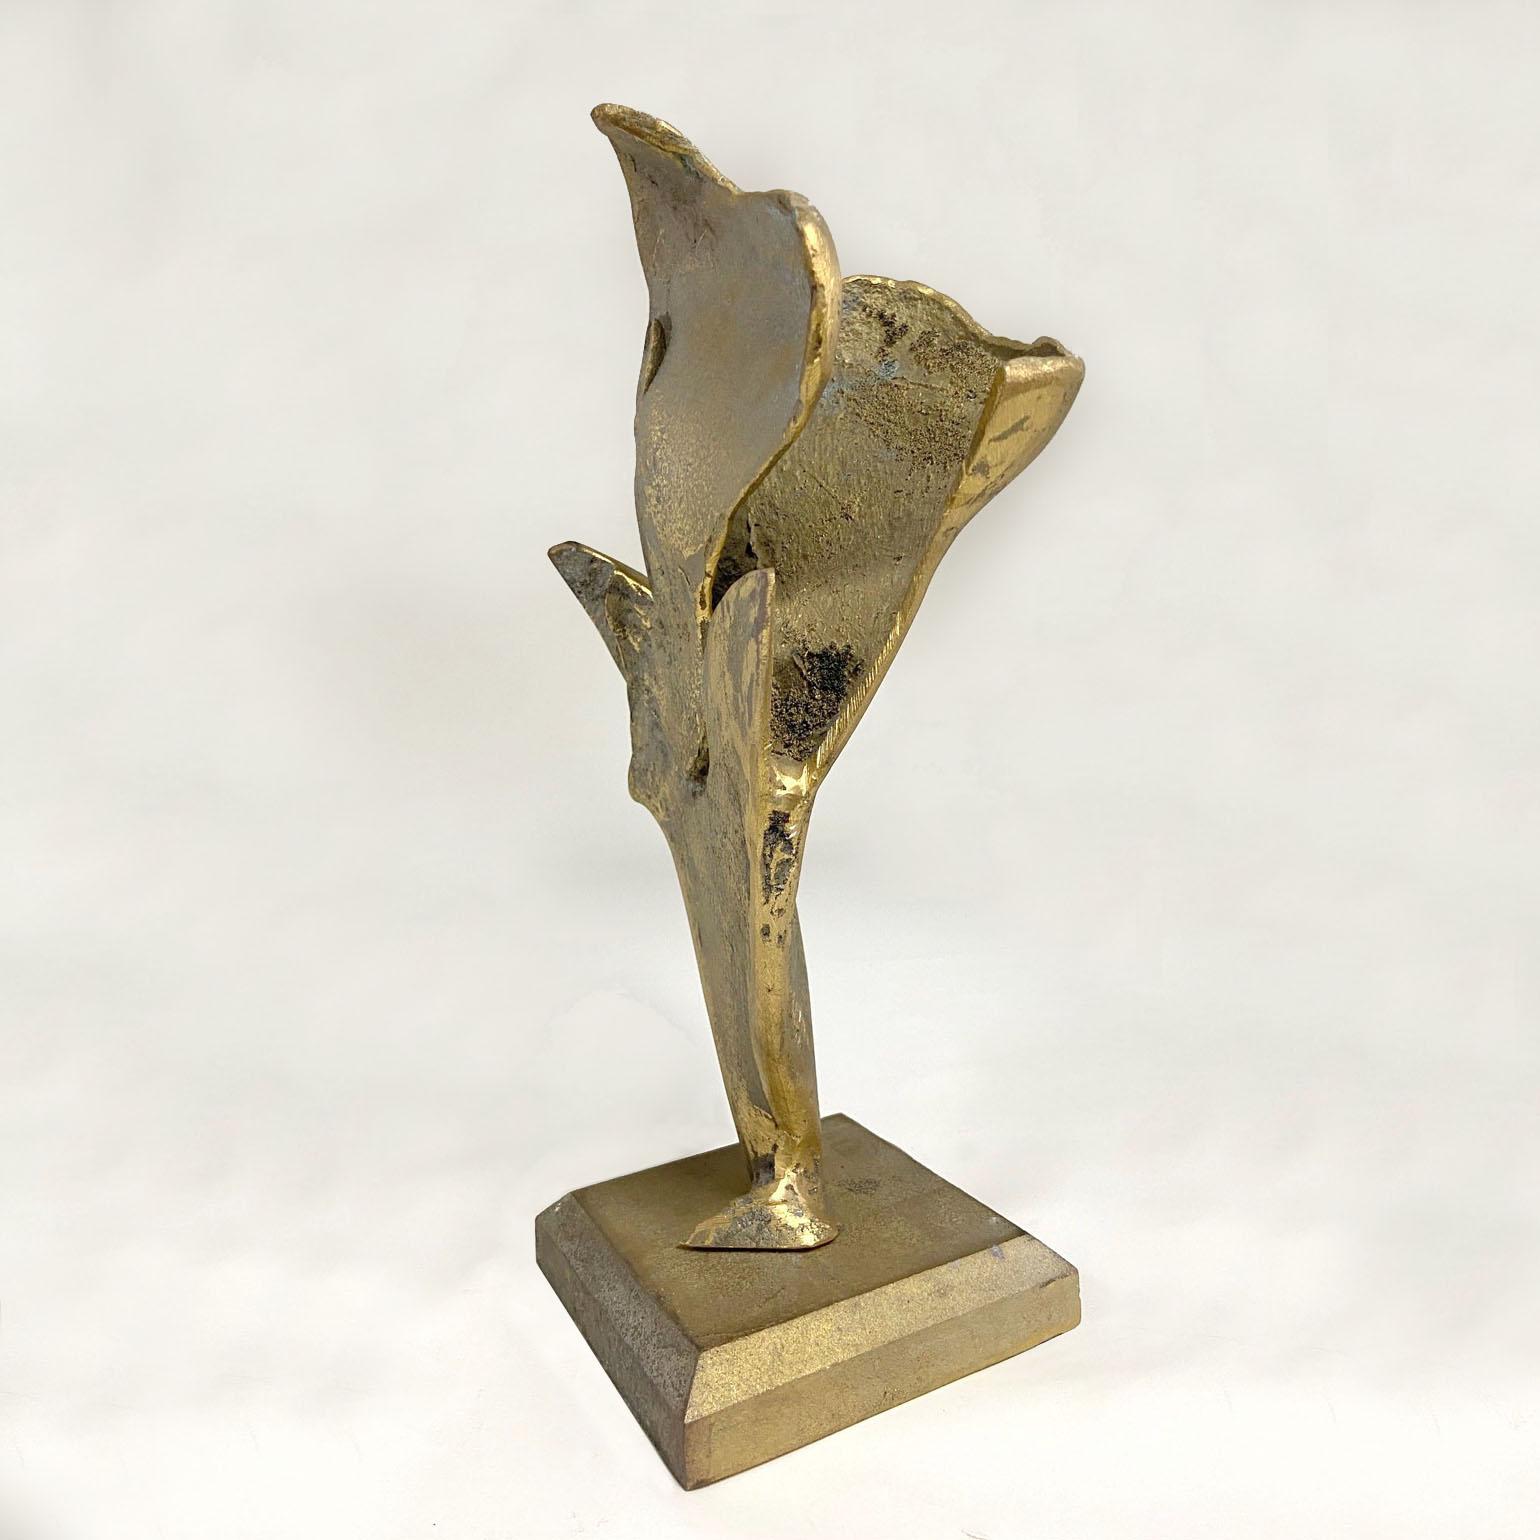 Sculpture abstraite en bronze représentant un oiseau sur le point de s'envoler, déployant ses ailes. La sculpture est expressive et brutale. Il repose sur un piédestal en bronze moulé.